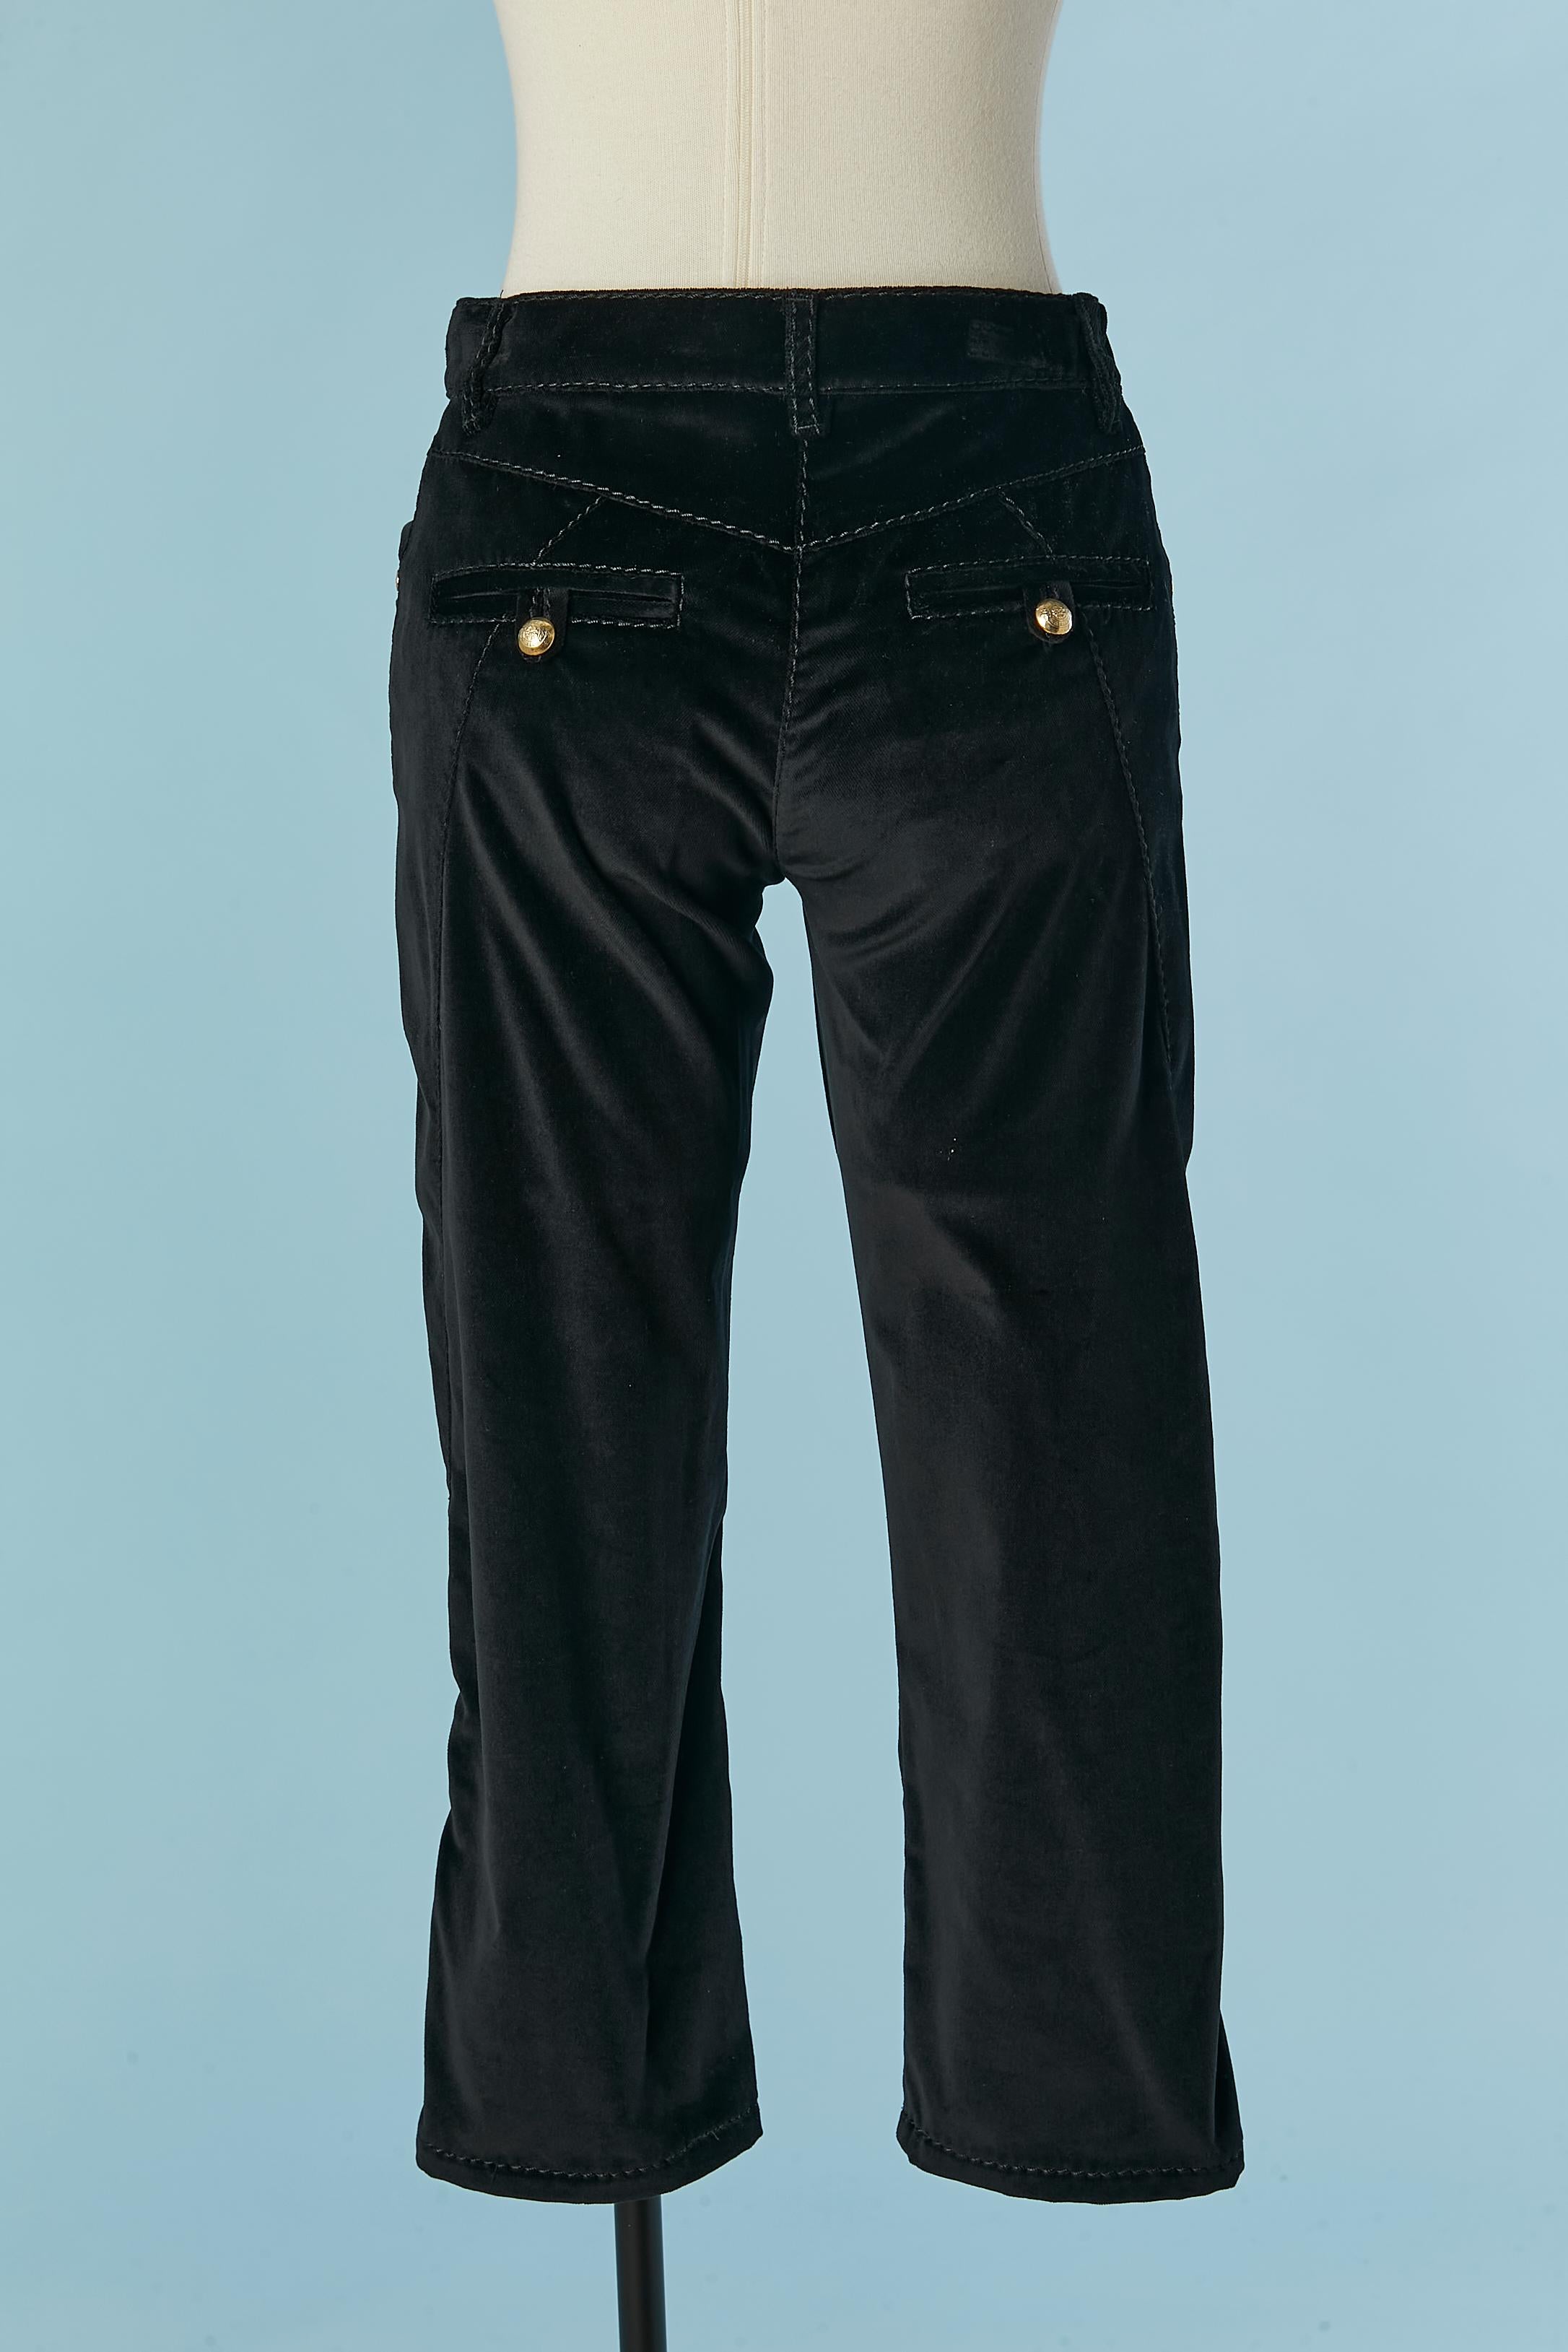 Black velvet short trousers  Roberto Cavalli  For Sale 1